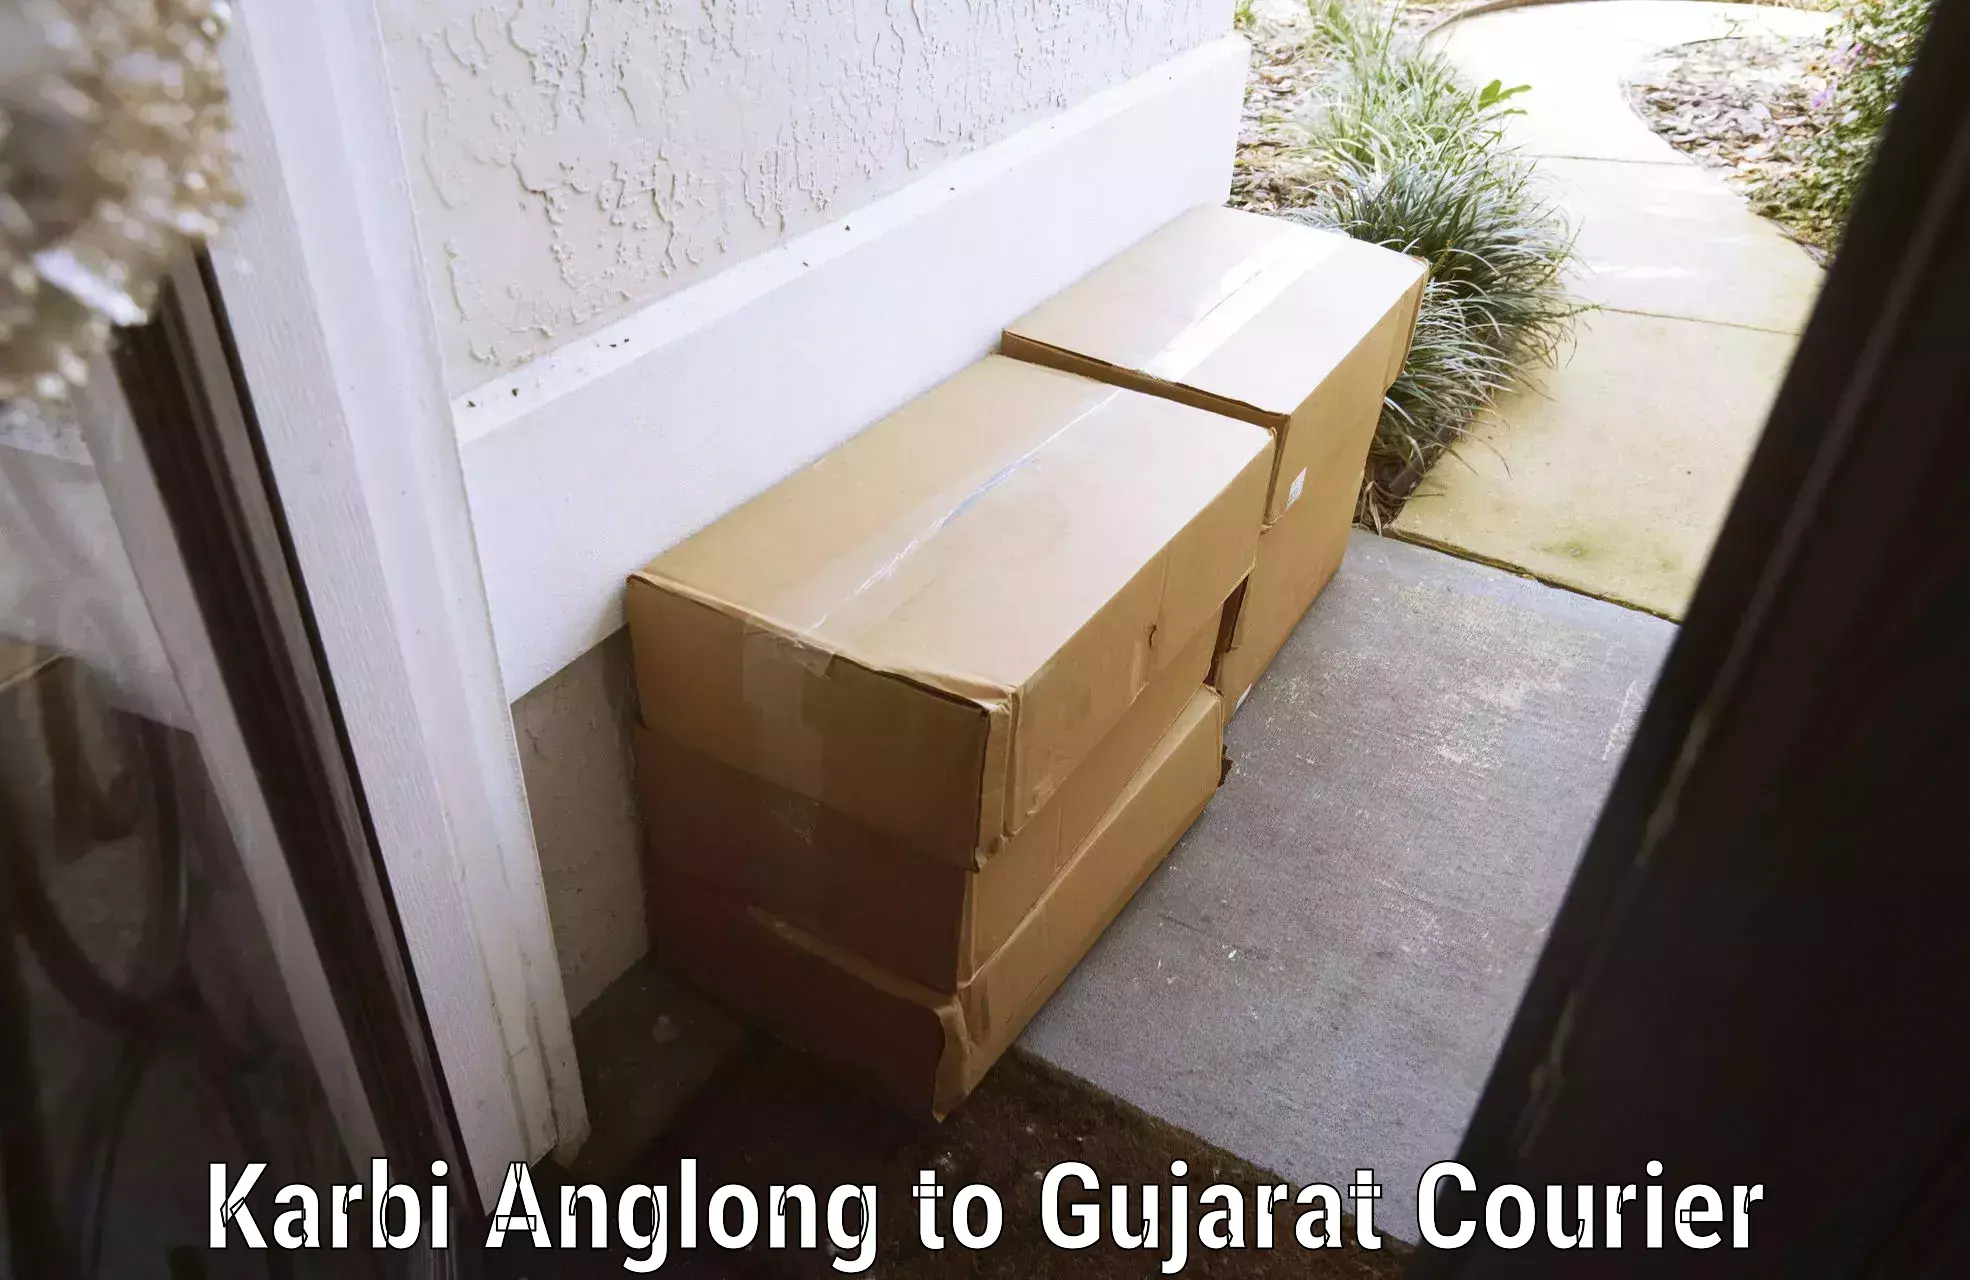 Luggage shipment tracking Karbi Anglong to Mehsana